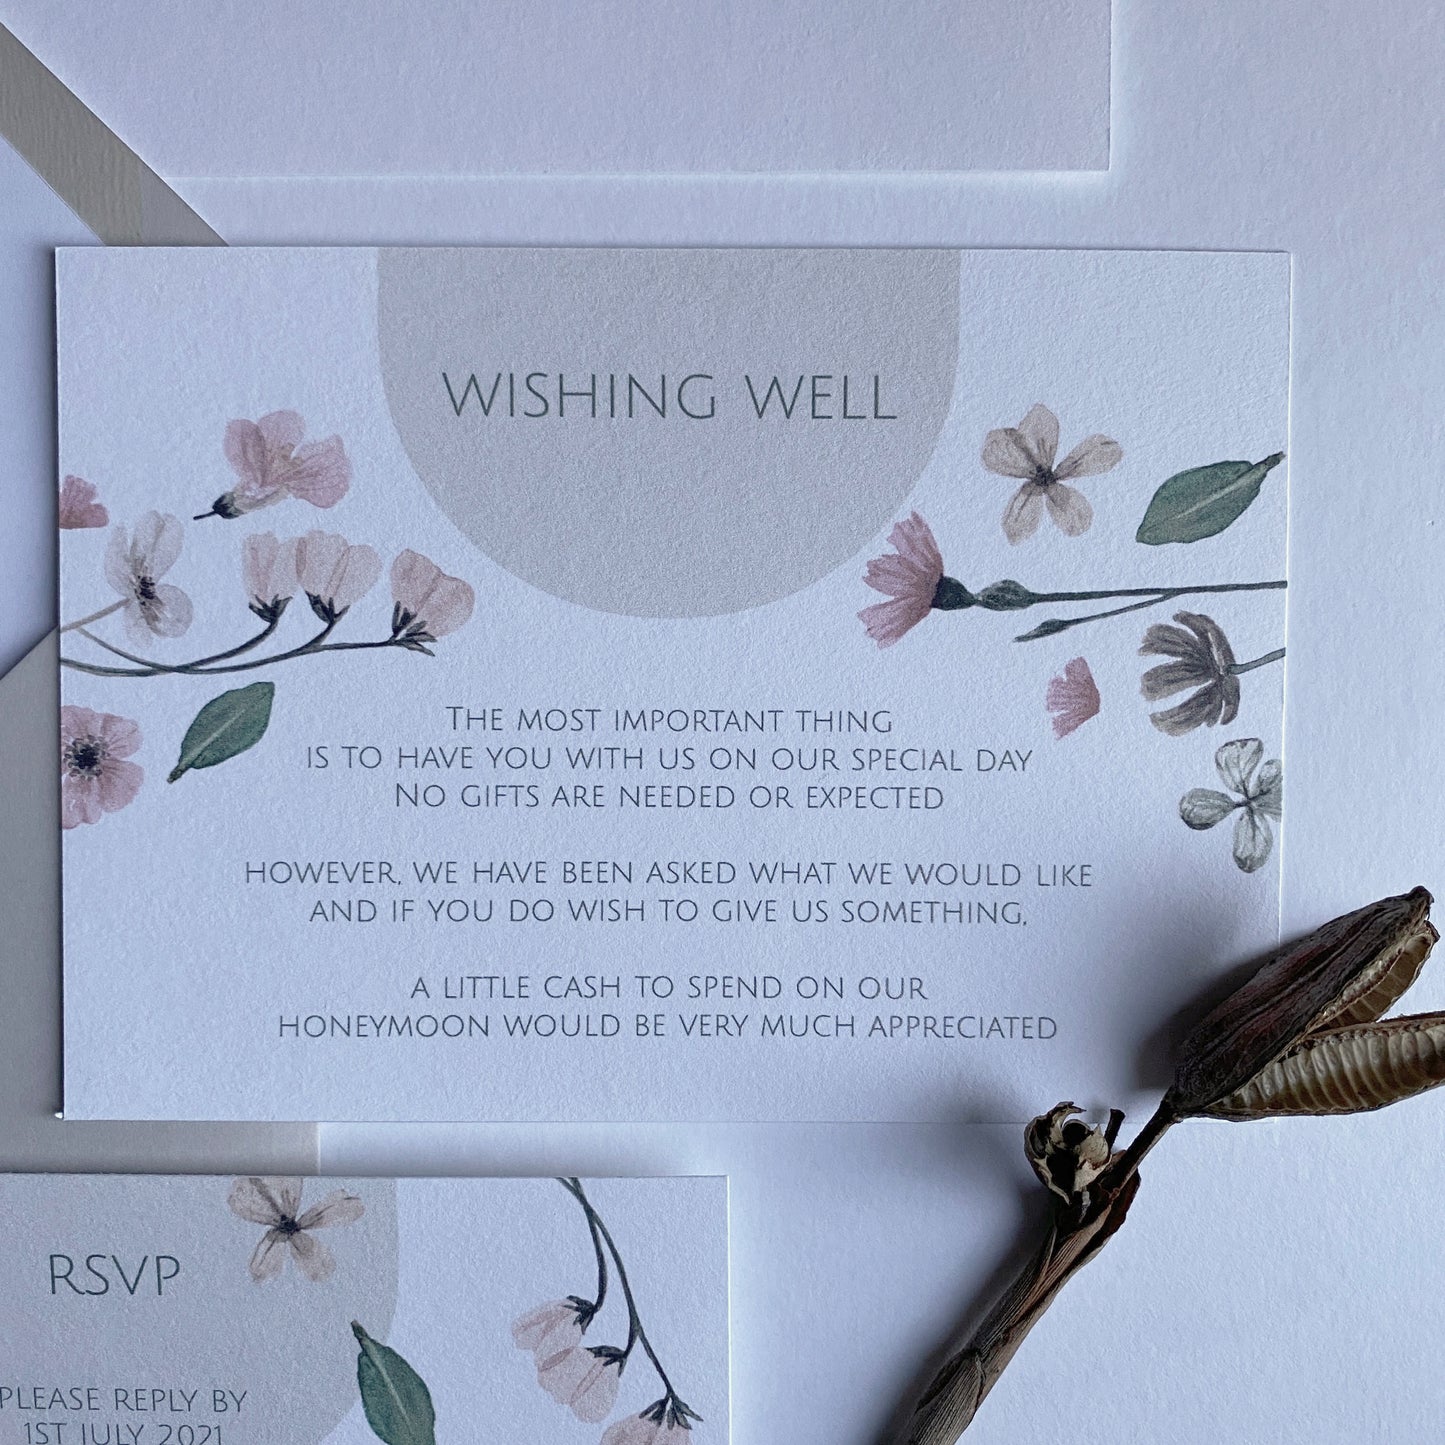 Pressed Flowers Invitation/WEDDING Invite/Botanical Invite/Vintage Pressed Flowers